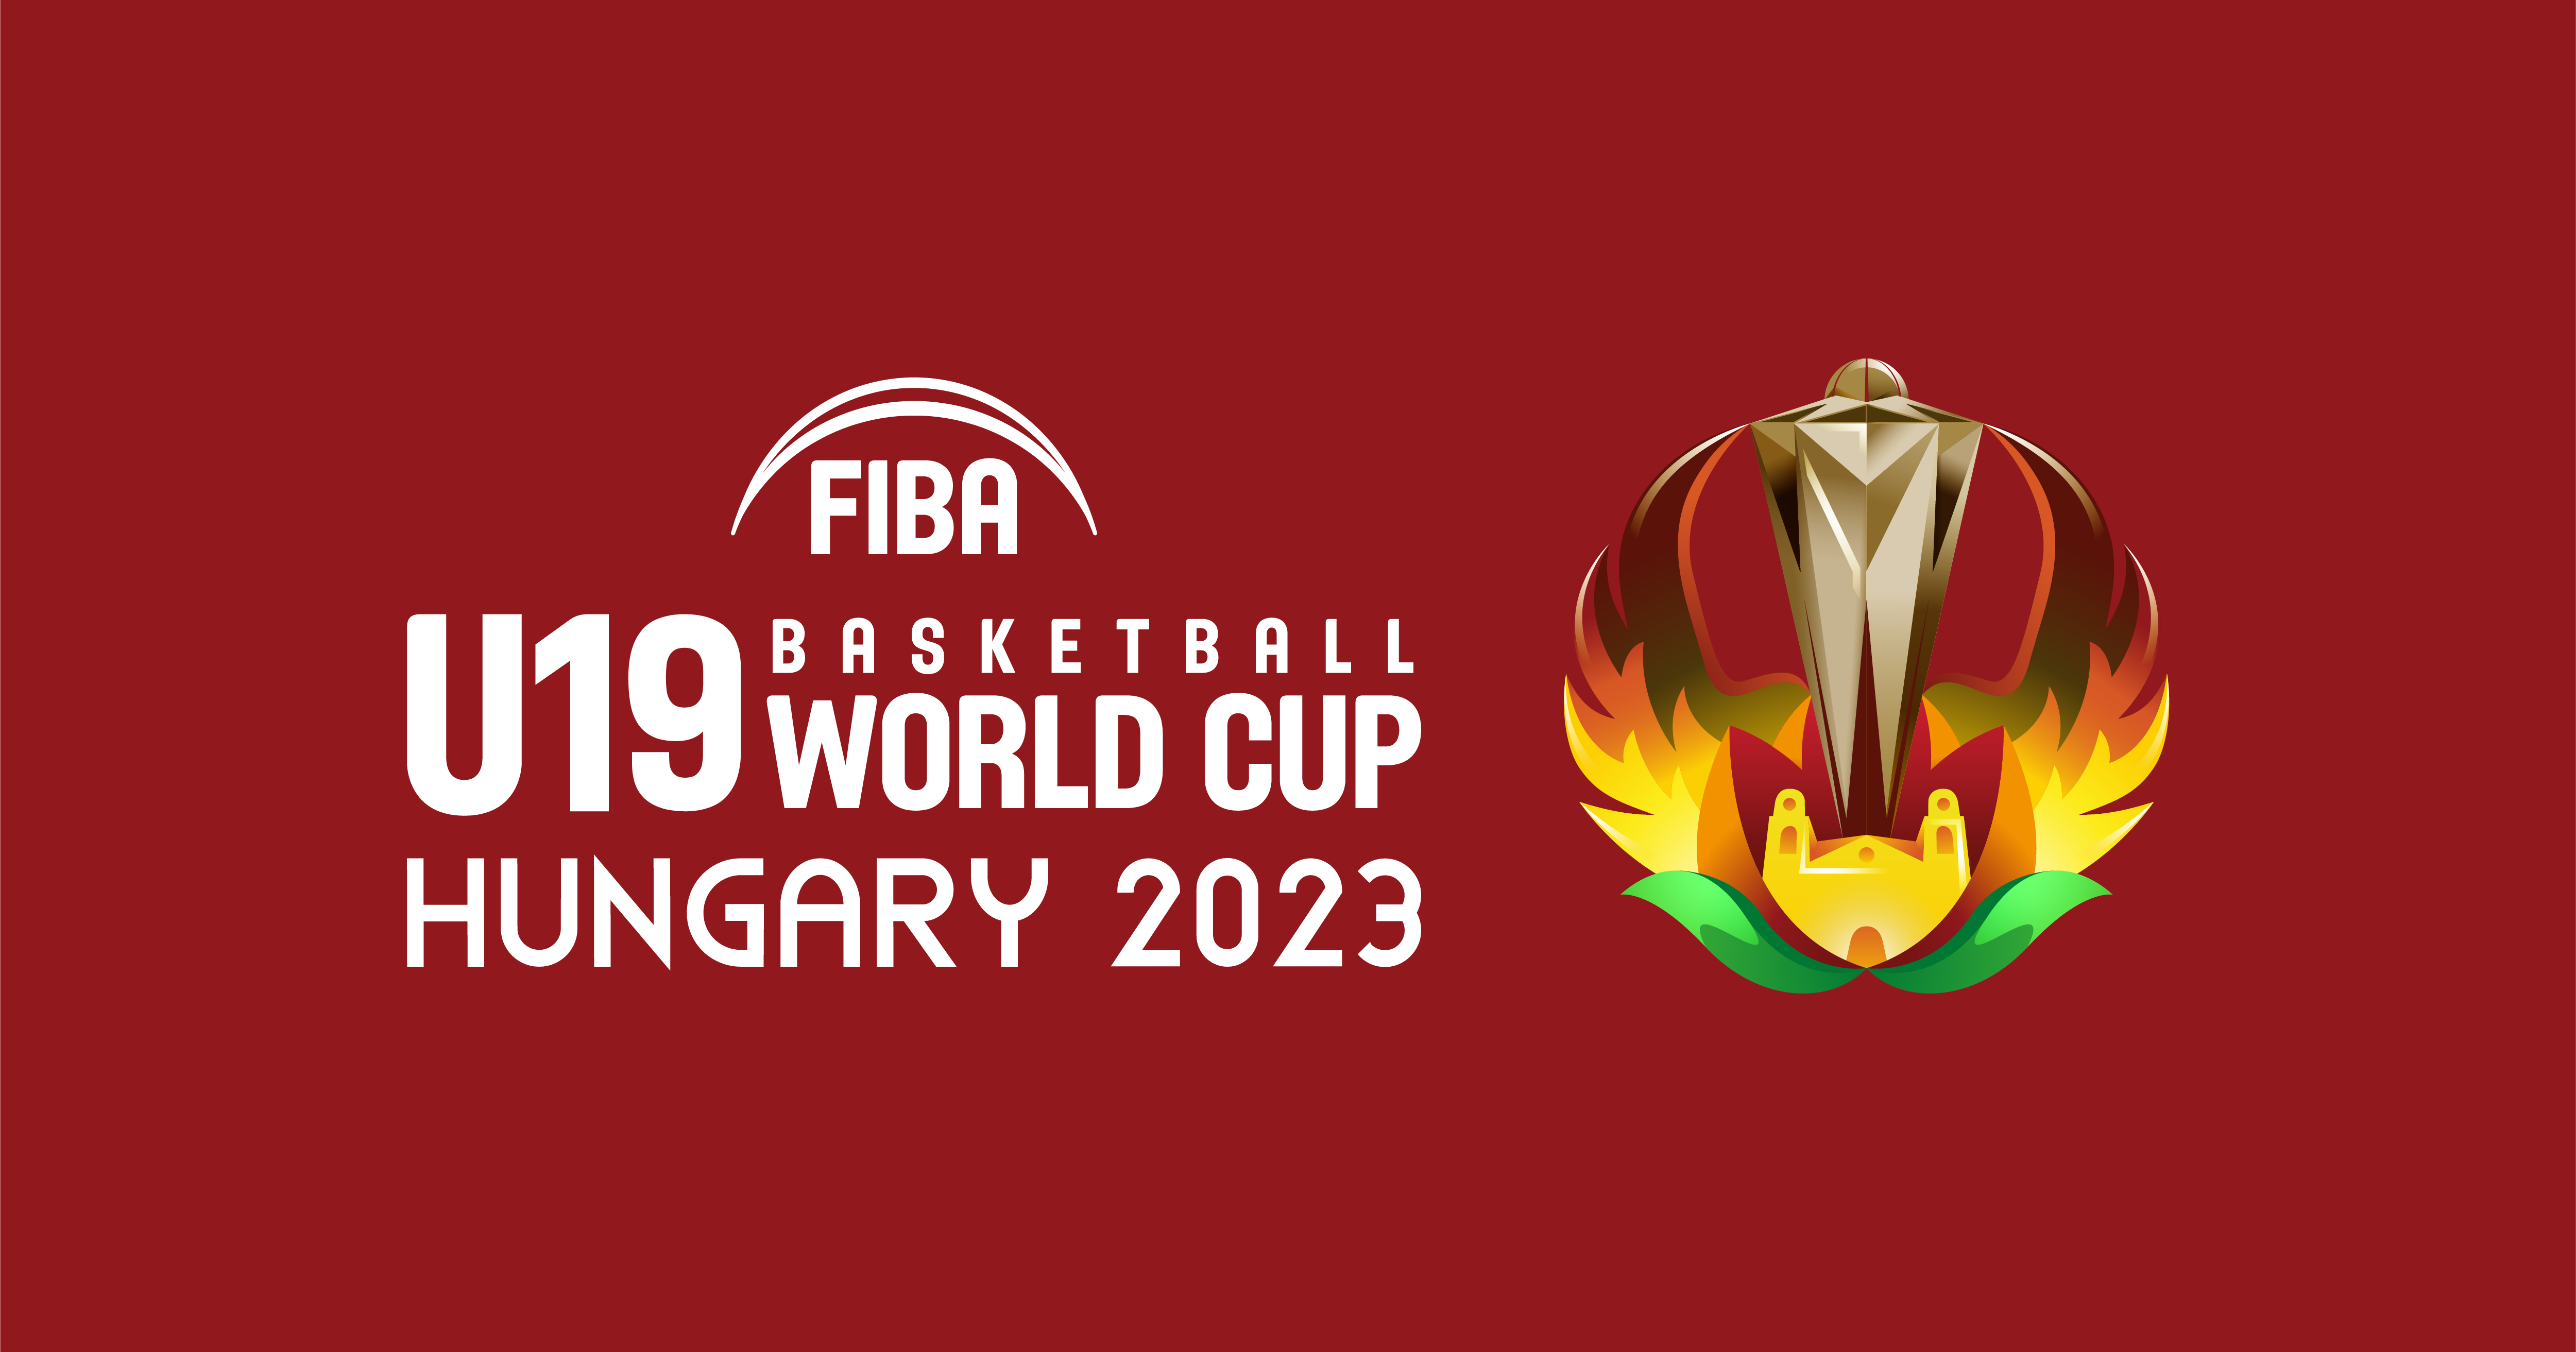 アメリカ合衆国 - FIBA U19 Basketball World Cup 2023 - FIBA.basketball